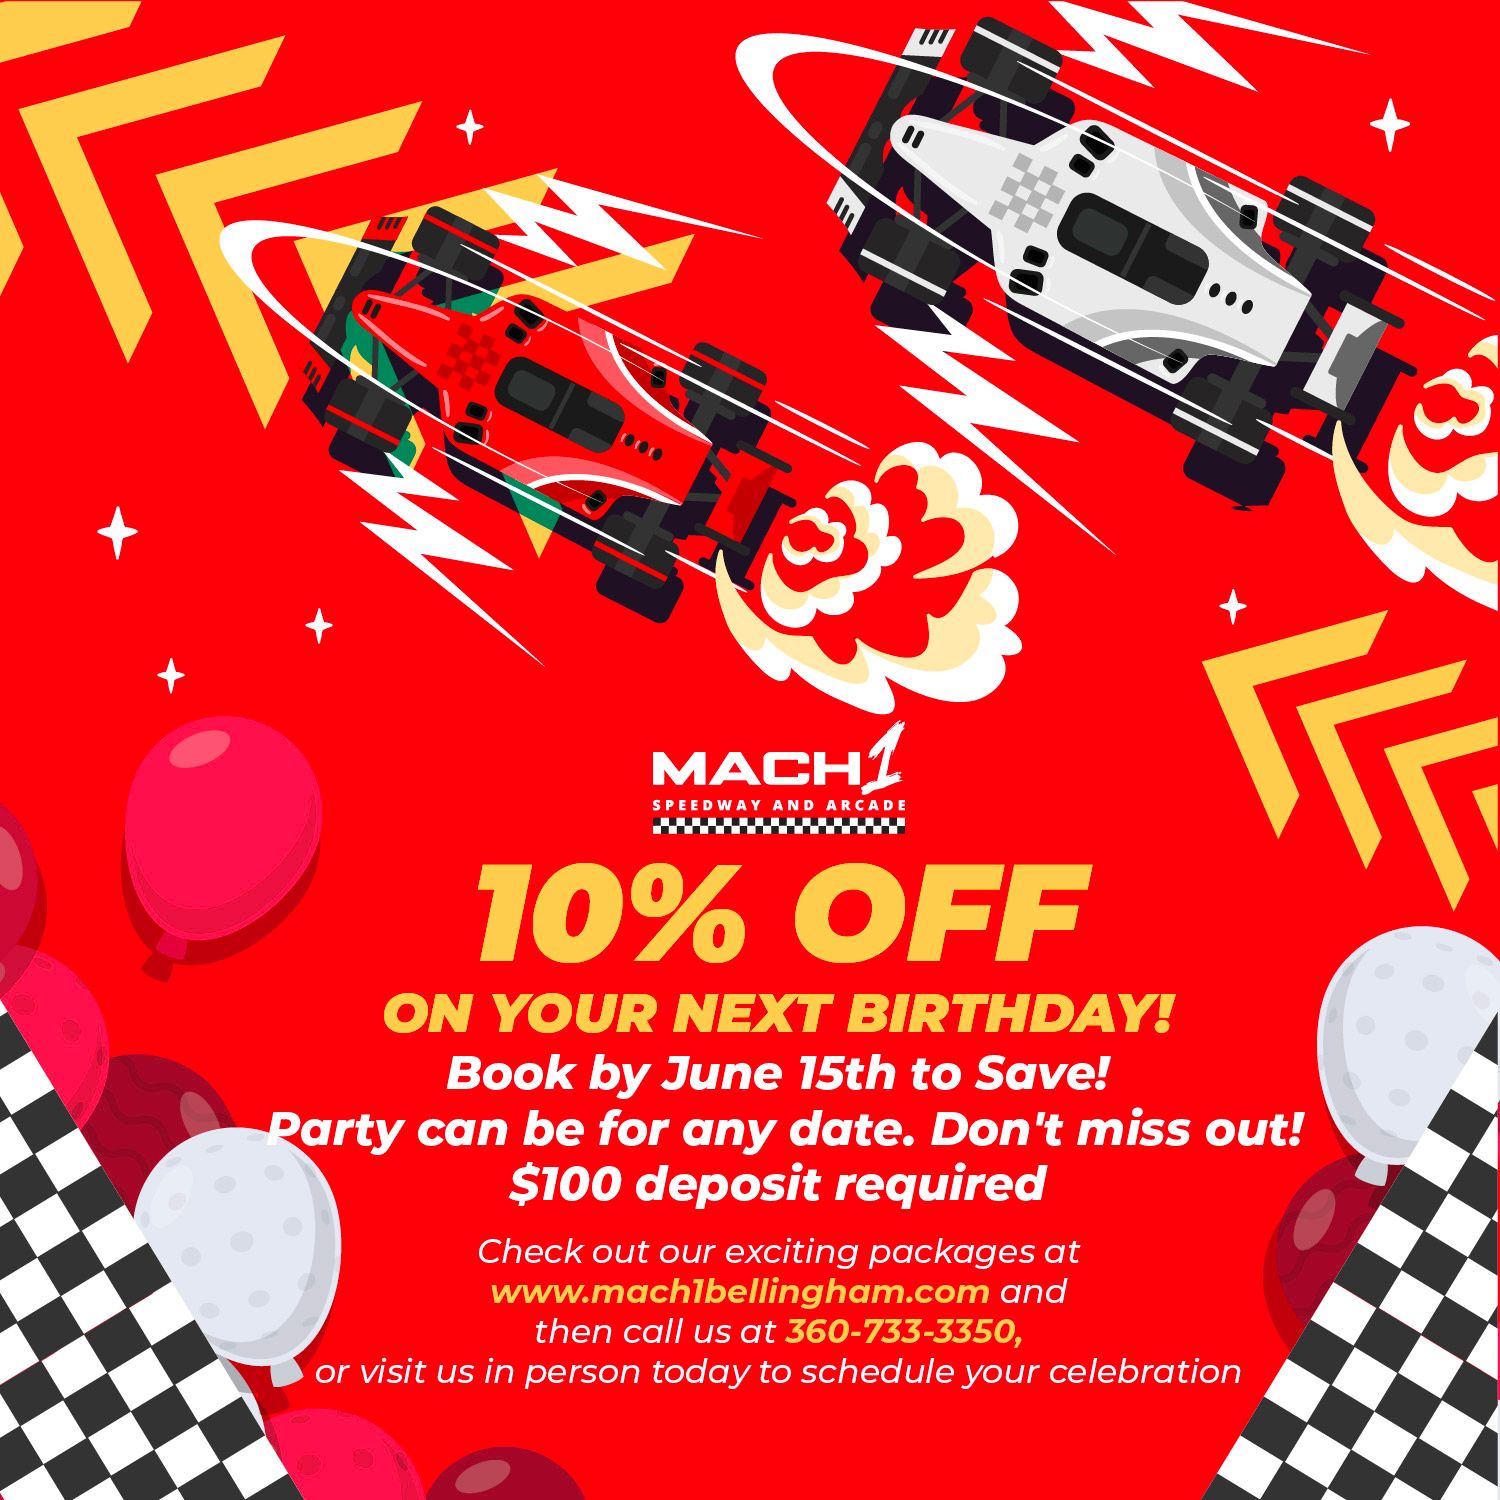 Mach1 Speedway & Arcade Birthday 10% OFF